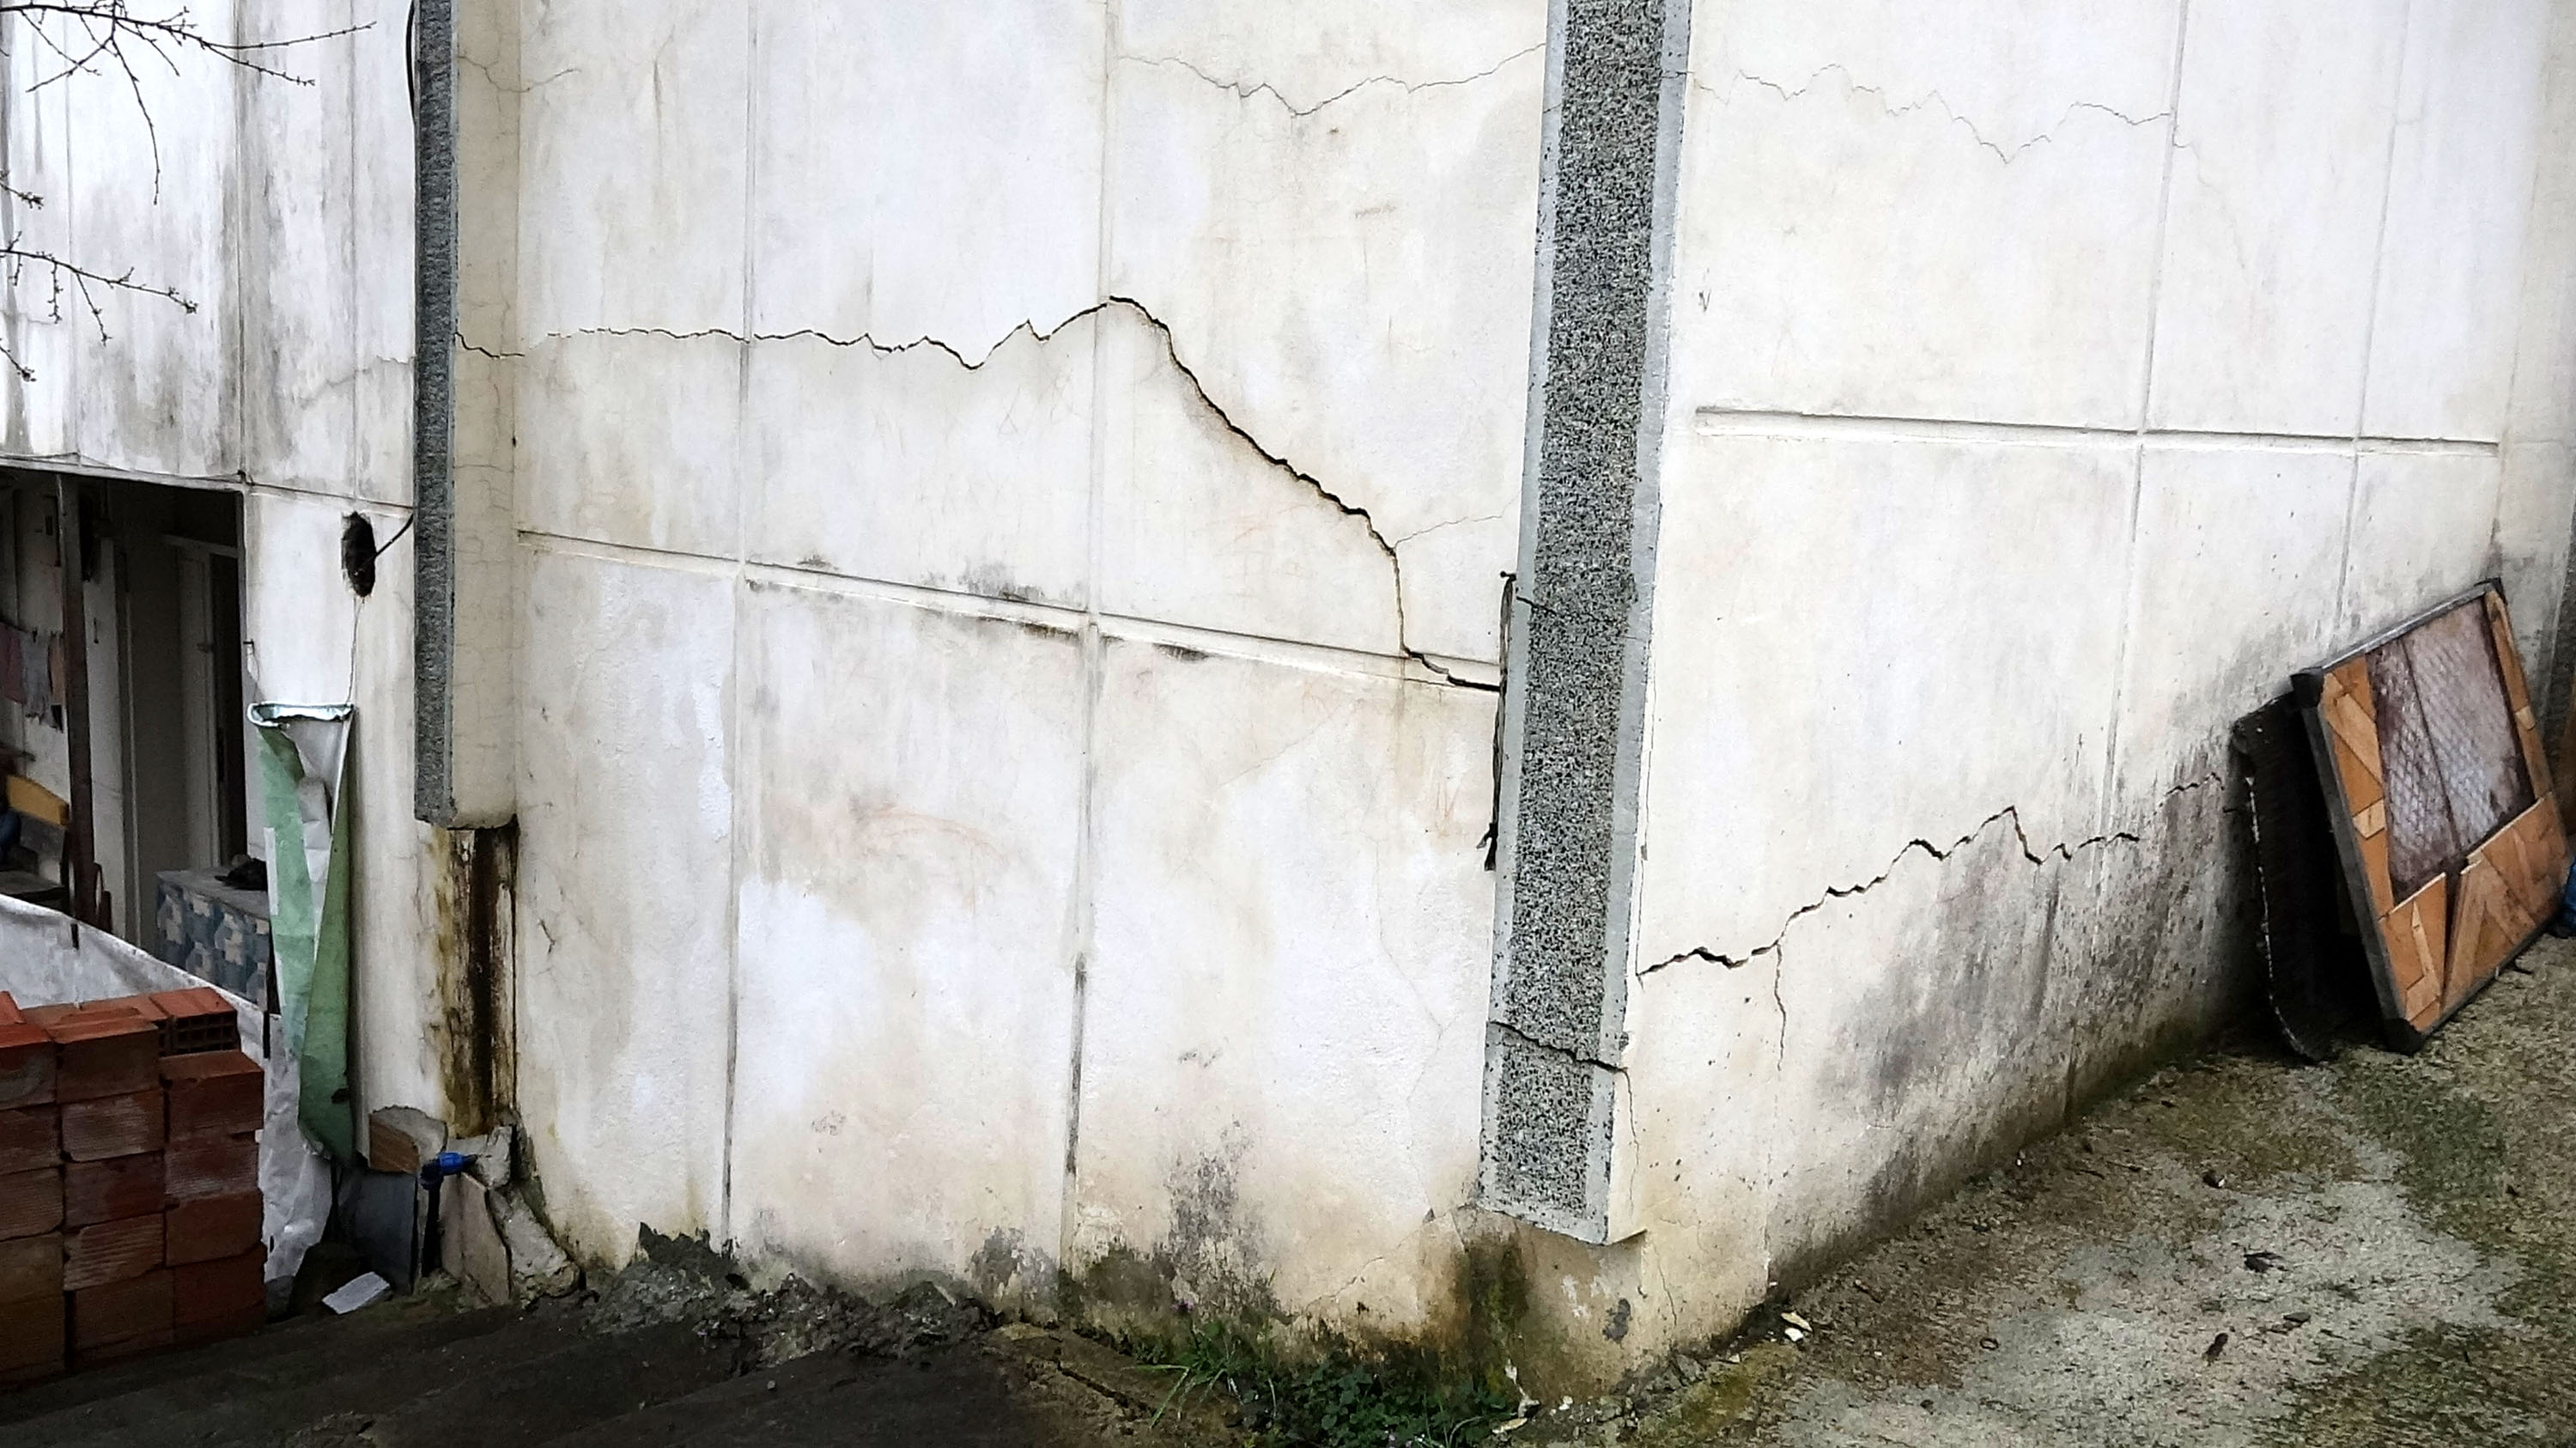 Trabzon’da heyelanda hasar gören evdeki çatlaklar Kahramanmaraş depreminde büyüdü